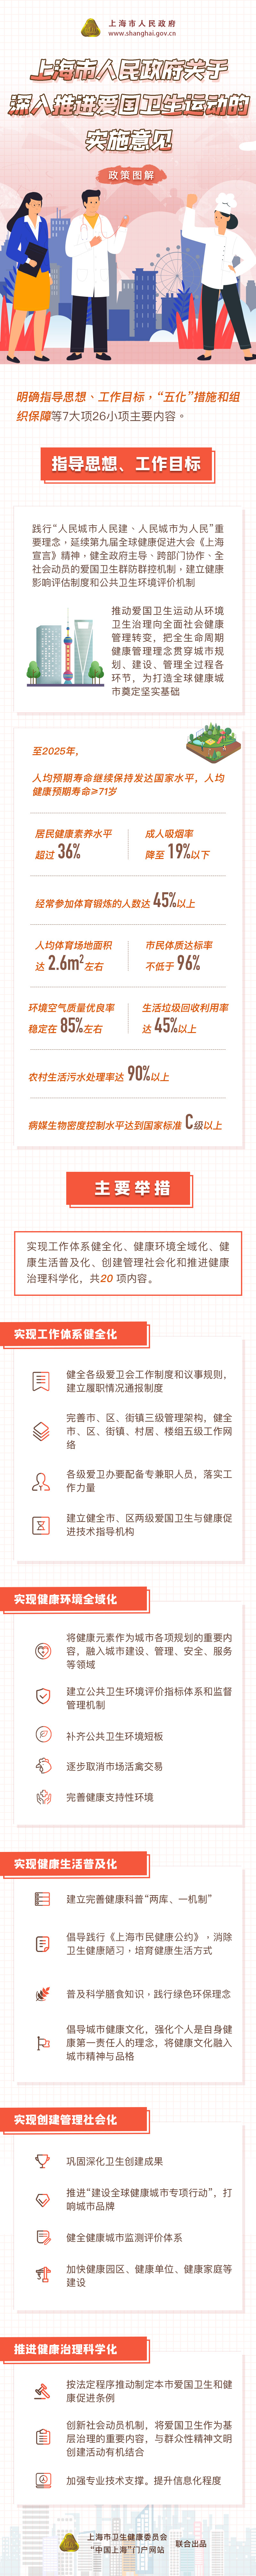 《关于深入推进上海市爱国卫生运动的实施意见》政策图解.jpg